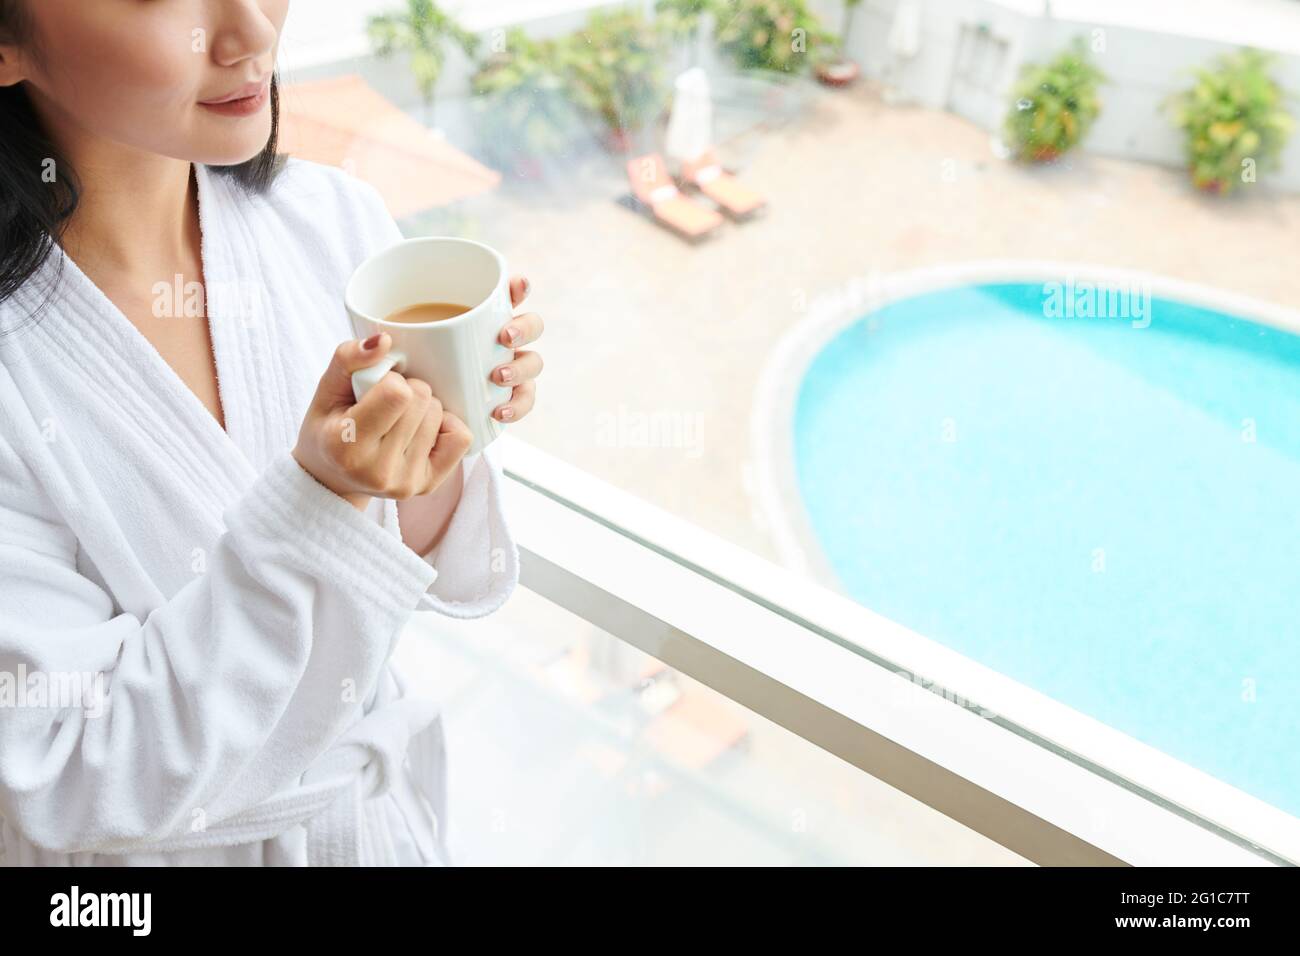 Beschnittenes Bild junge Frau im weißen Bademantel trinkt einen großen Becher Morgenkaffee, wenn sie am Hotelfenster steht und nach draußen schaut Stockfoto